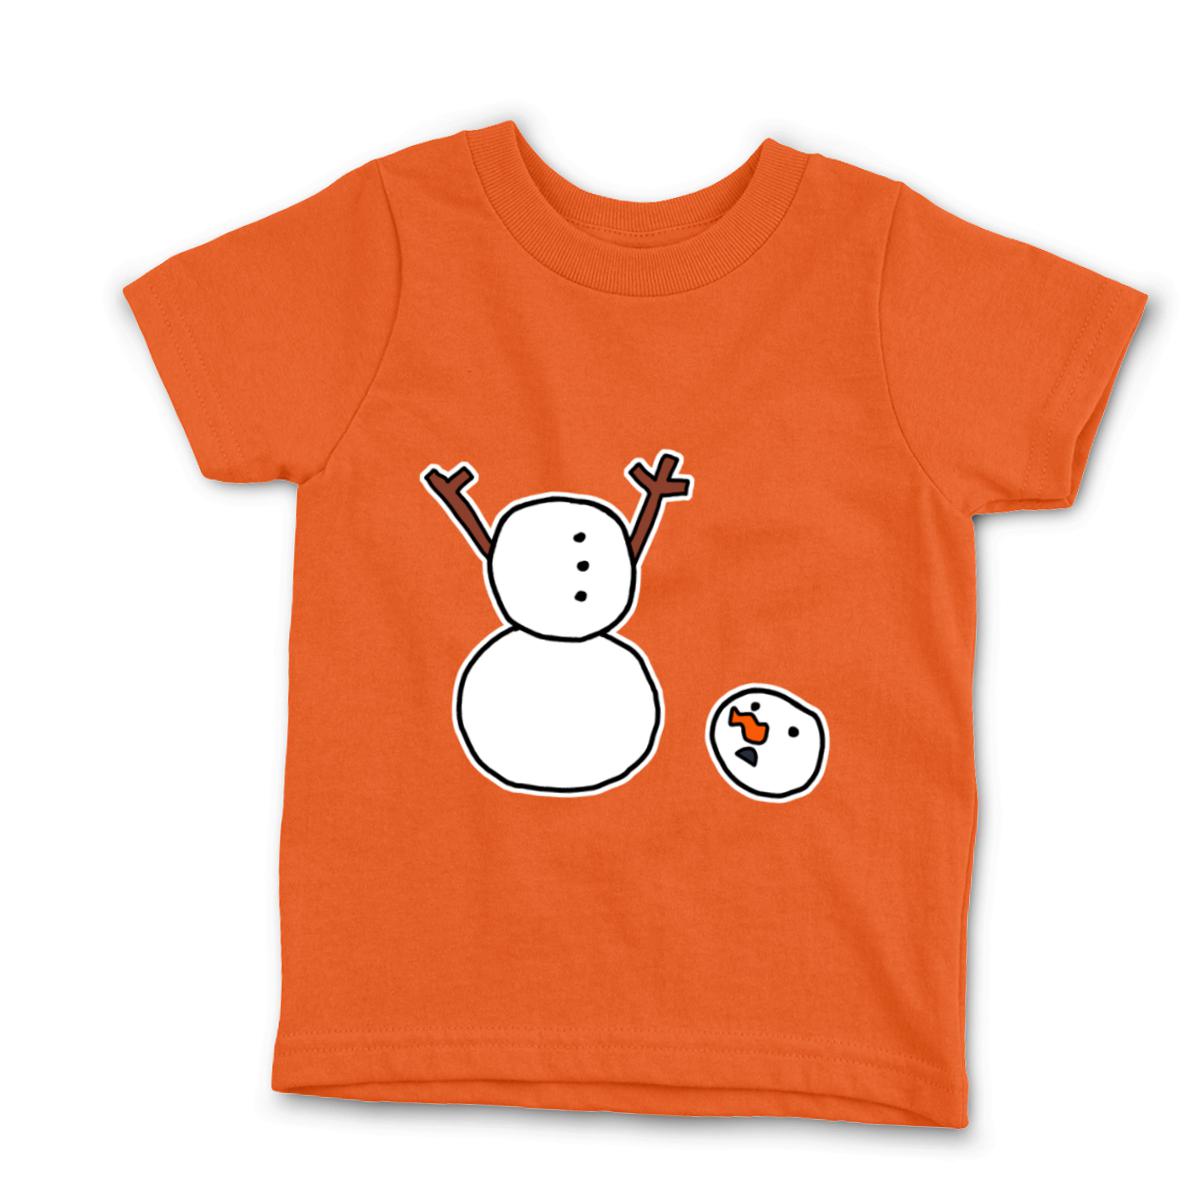 Headless Snowman Kid's Tee Small orange